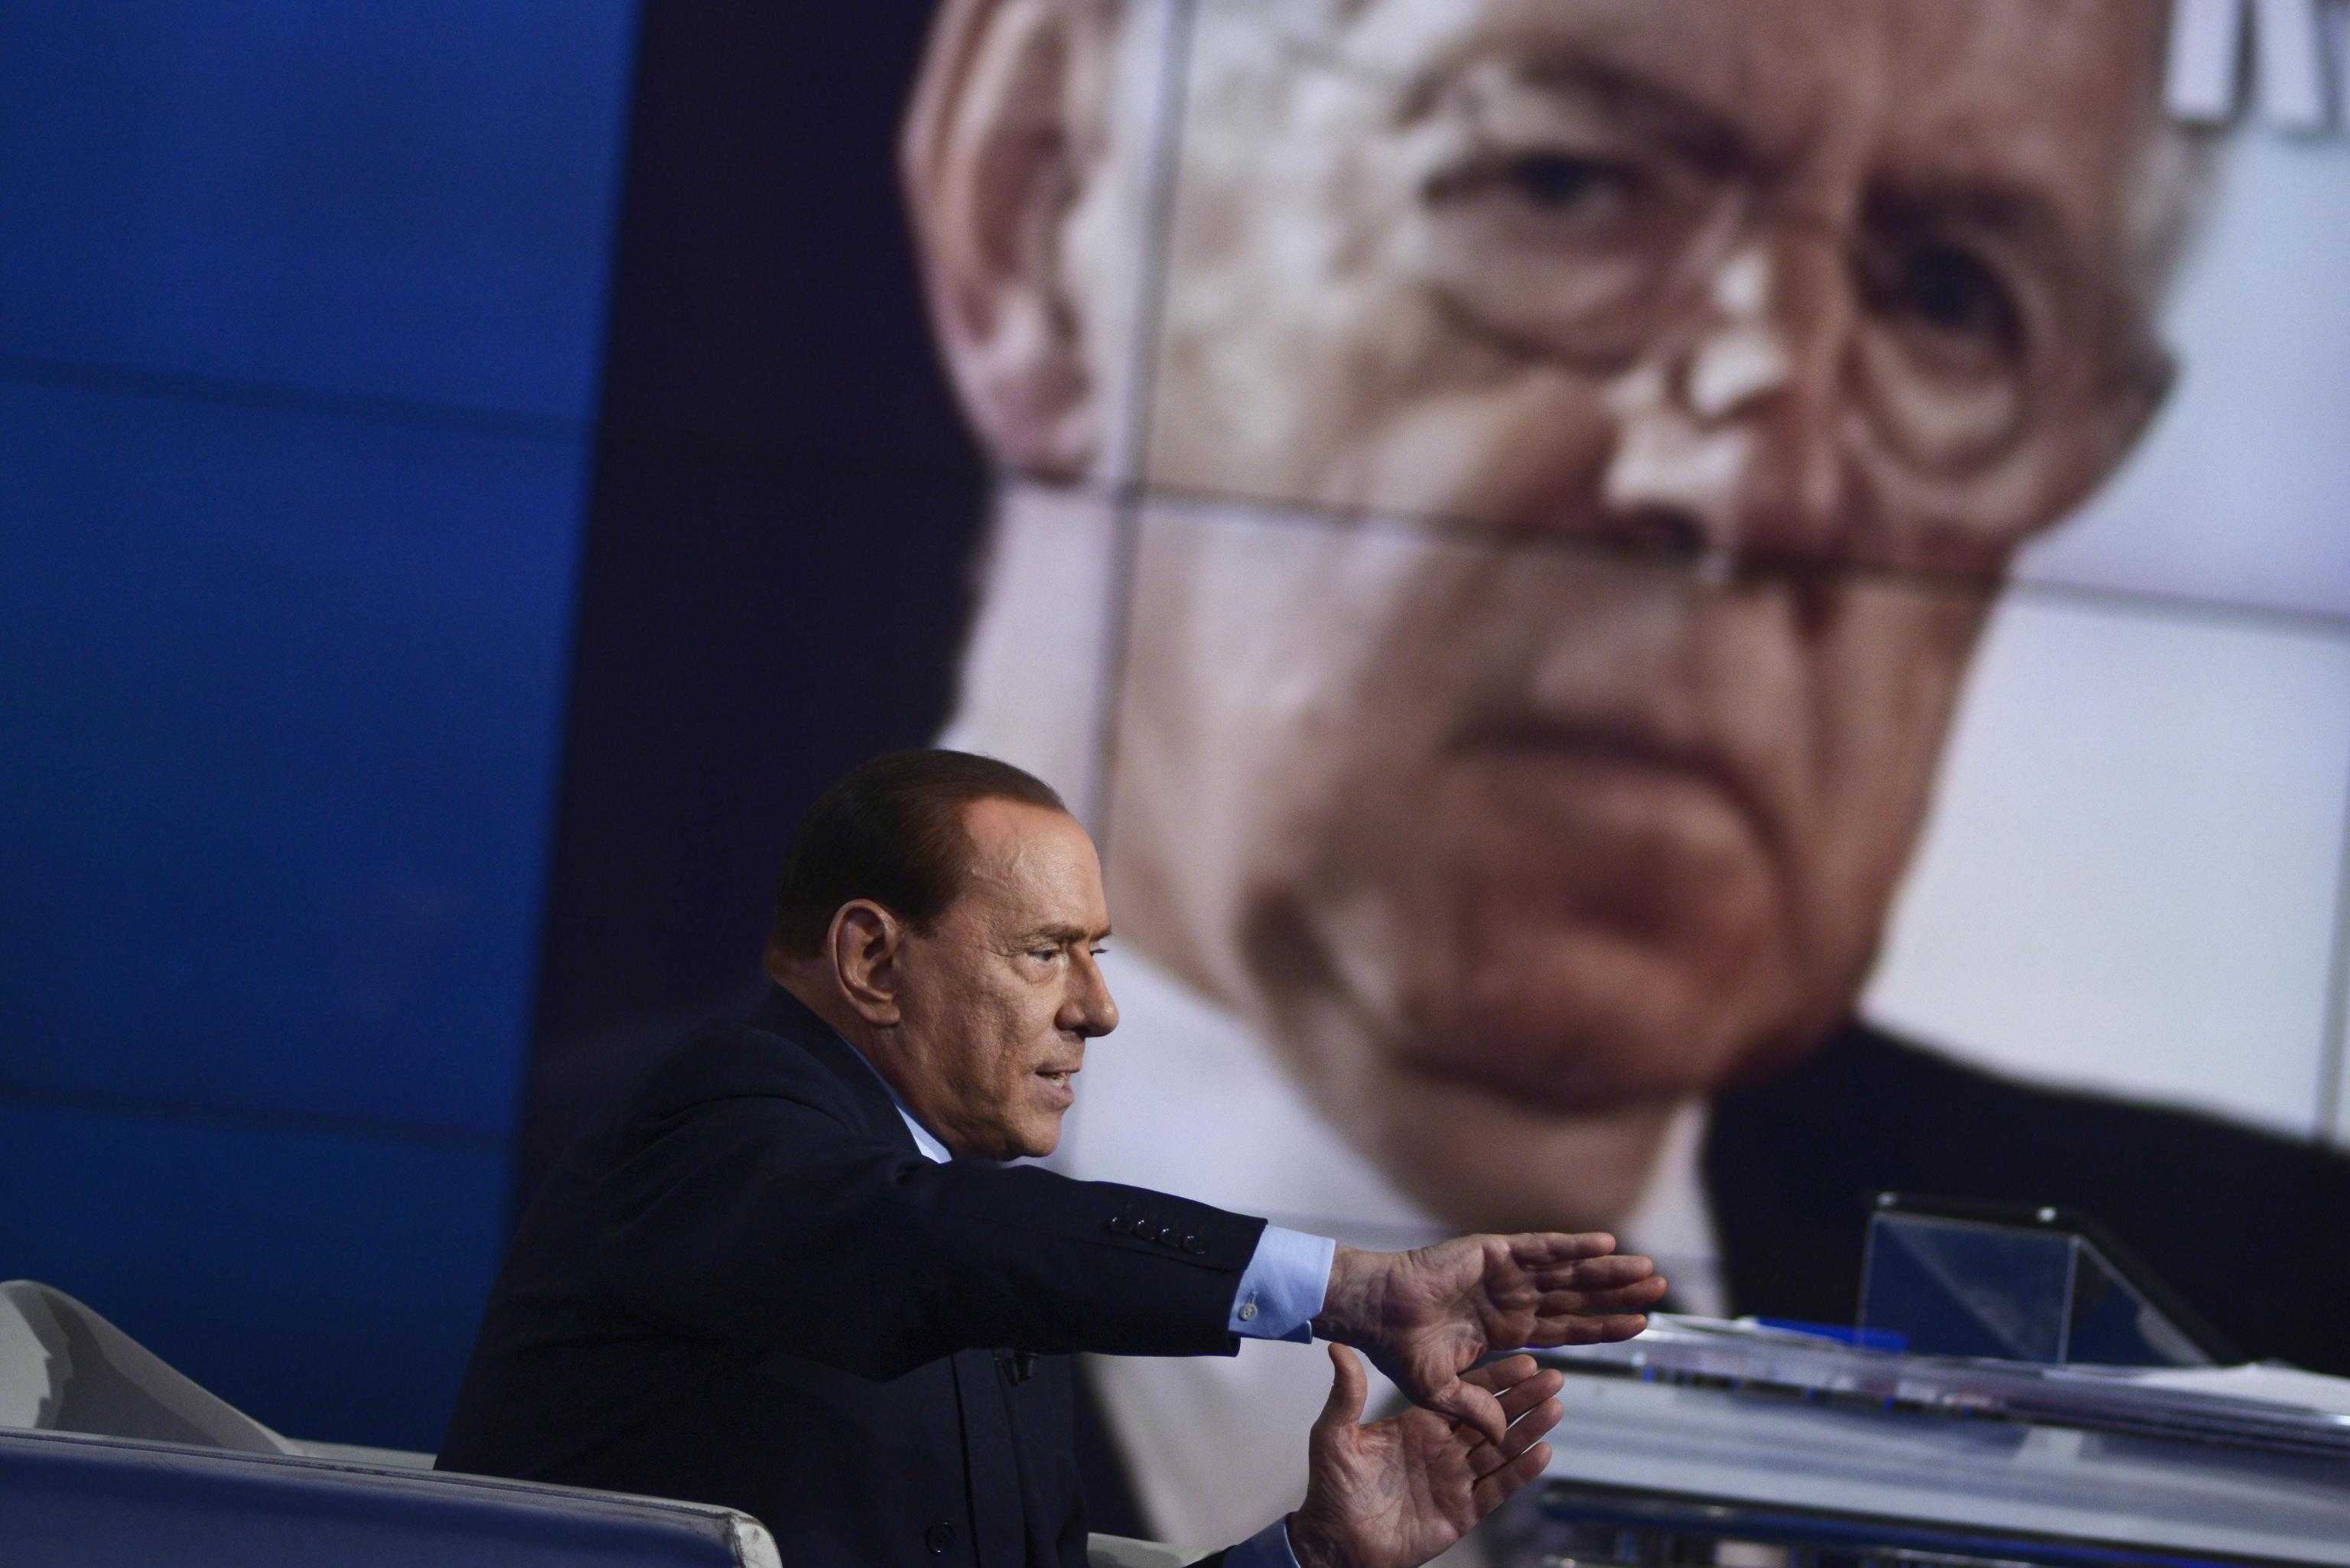 Mario Monti sfida Berlusconi in tv: "Il solito incantatore di serpenti"